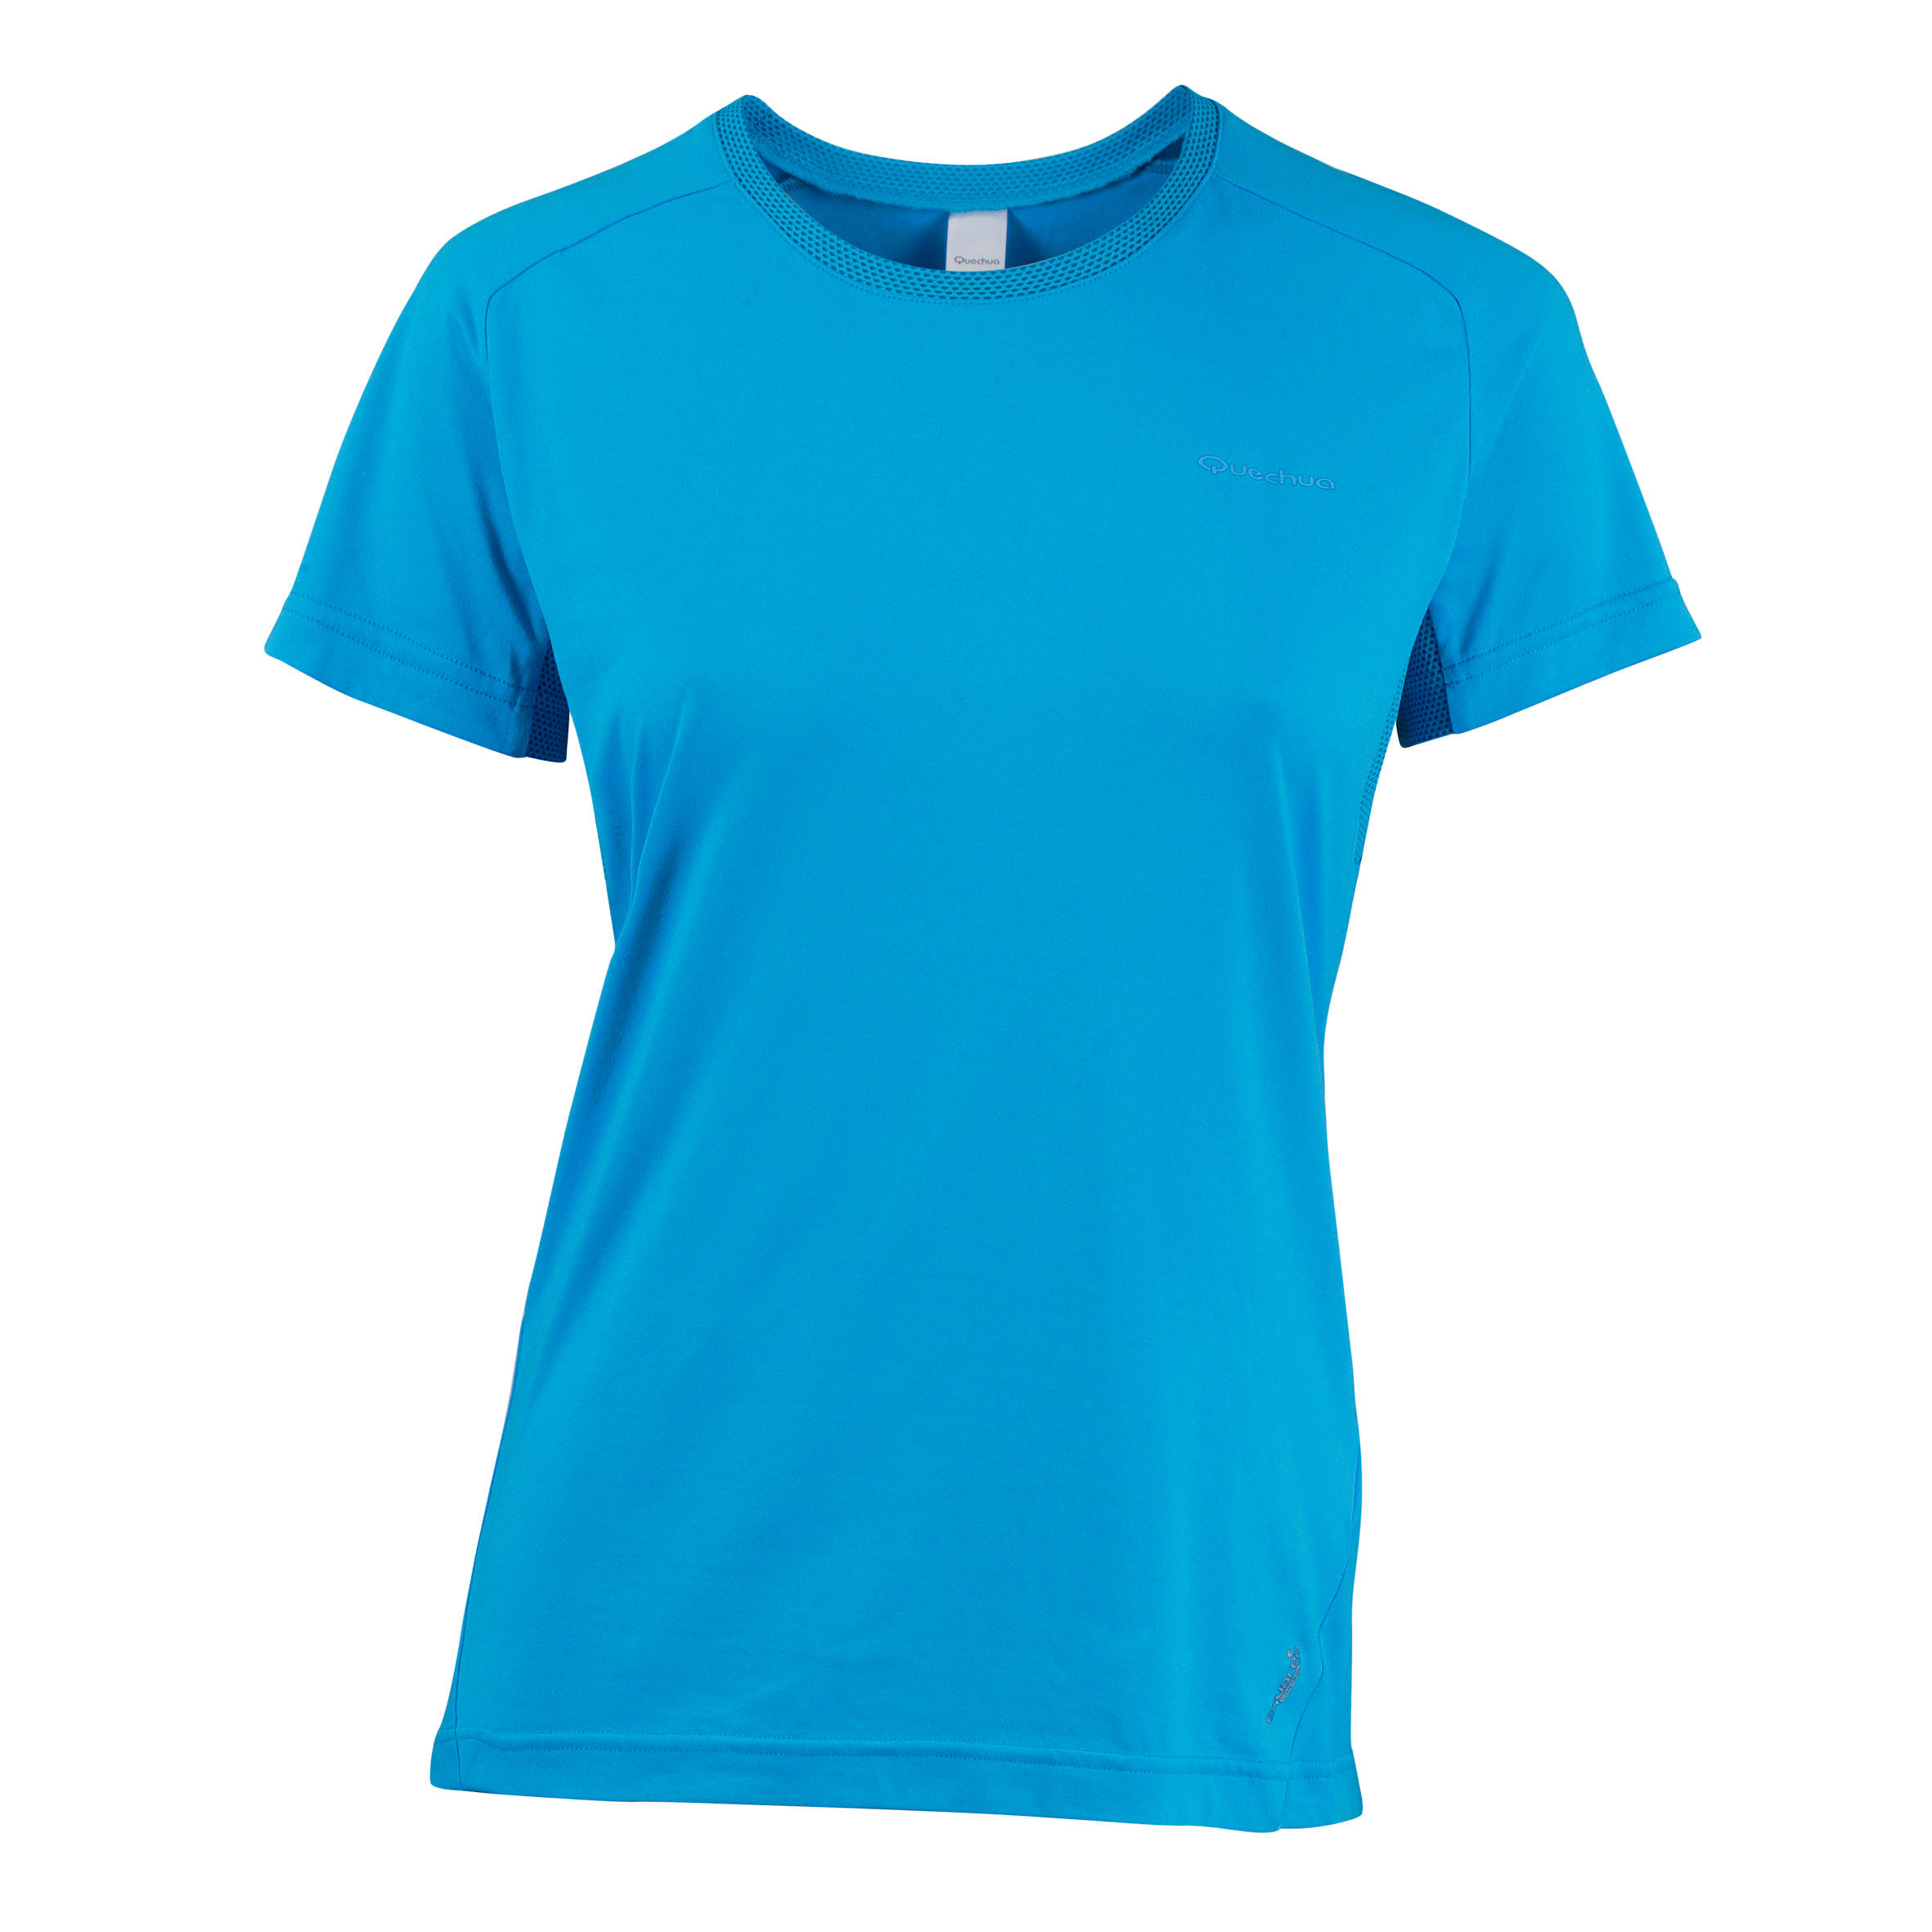 QUECHUA Techfresh 50 Women's Short-Sleeved Hiking T-Shirt - Turquoise